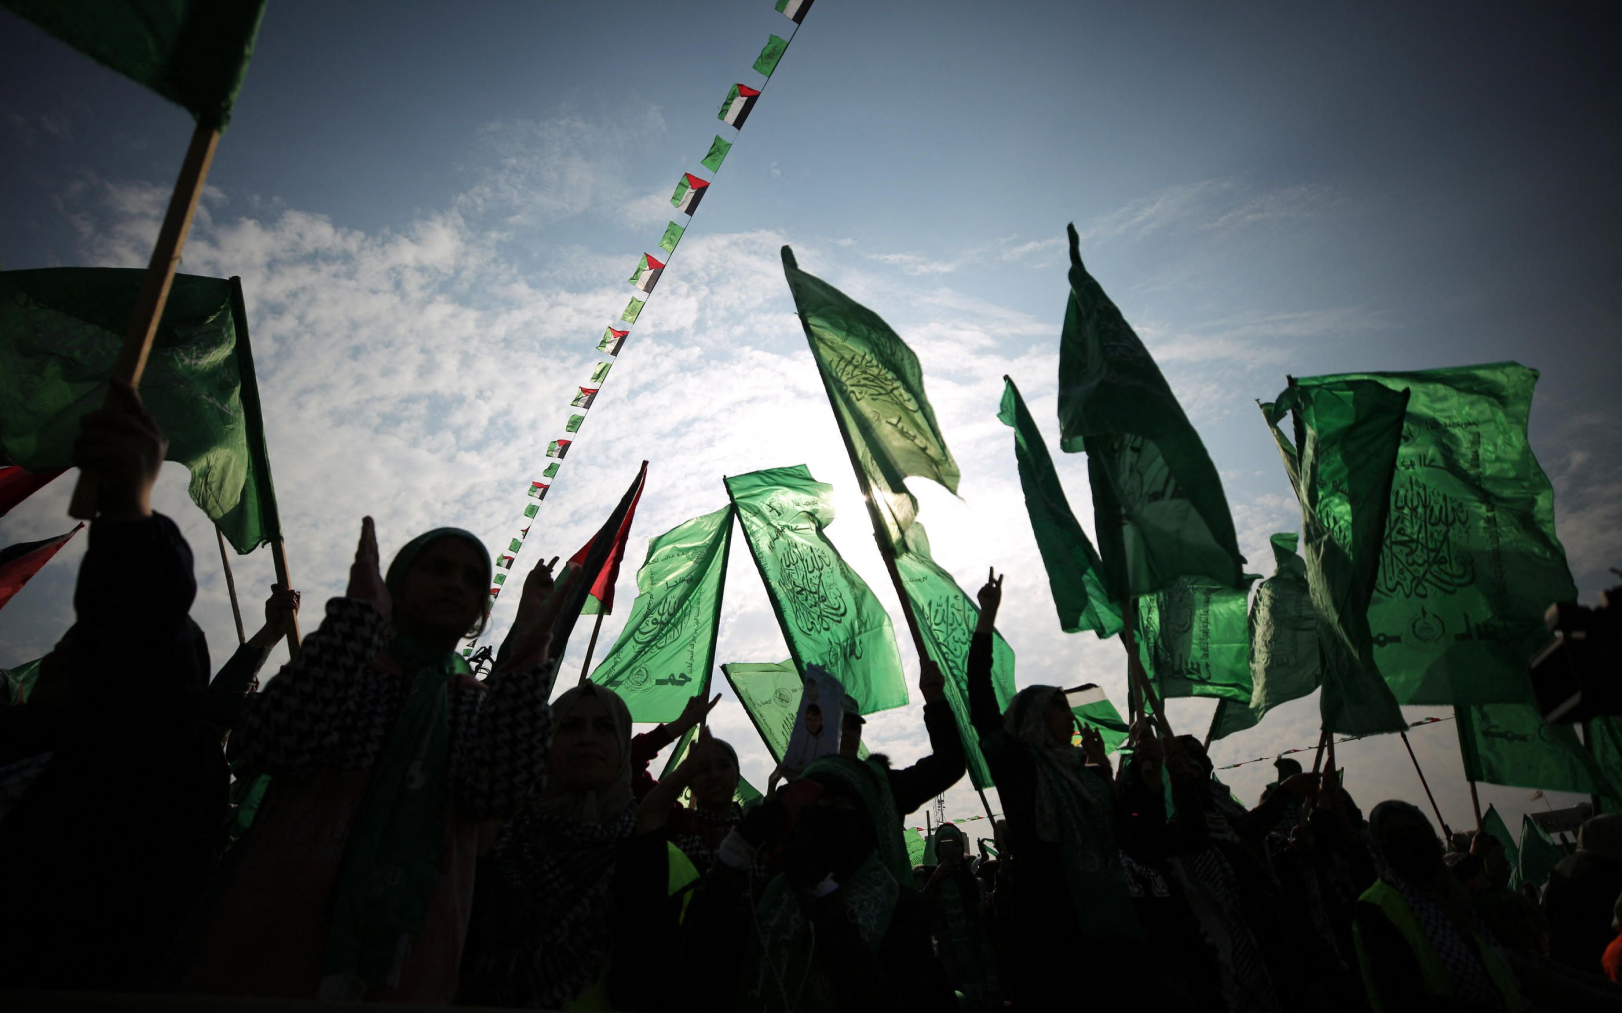 Gaza-Ville, le 14 décembre 2022. Le Hamas a fêté il y a un an son 35e anniversaire. Depuis 1987, le mouvement s’attaque à l’État hébreu via des attentats contre les civils — fusillades, attentats à la bombe, kamikazes... AFP/Ali Jadallah